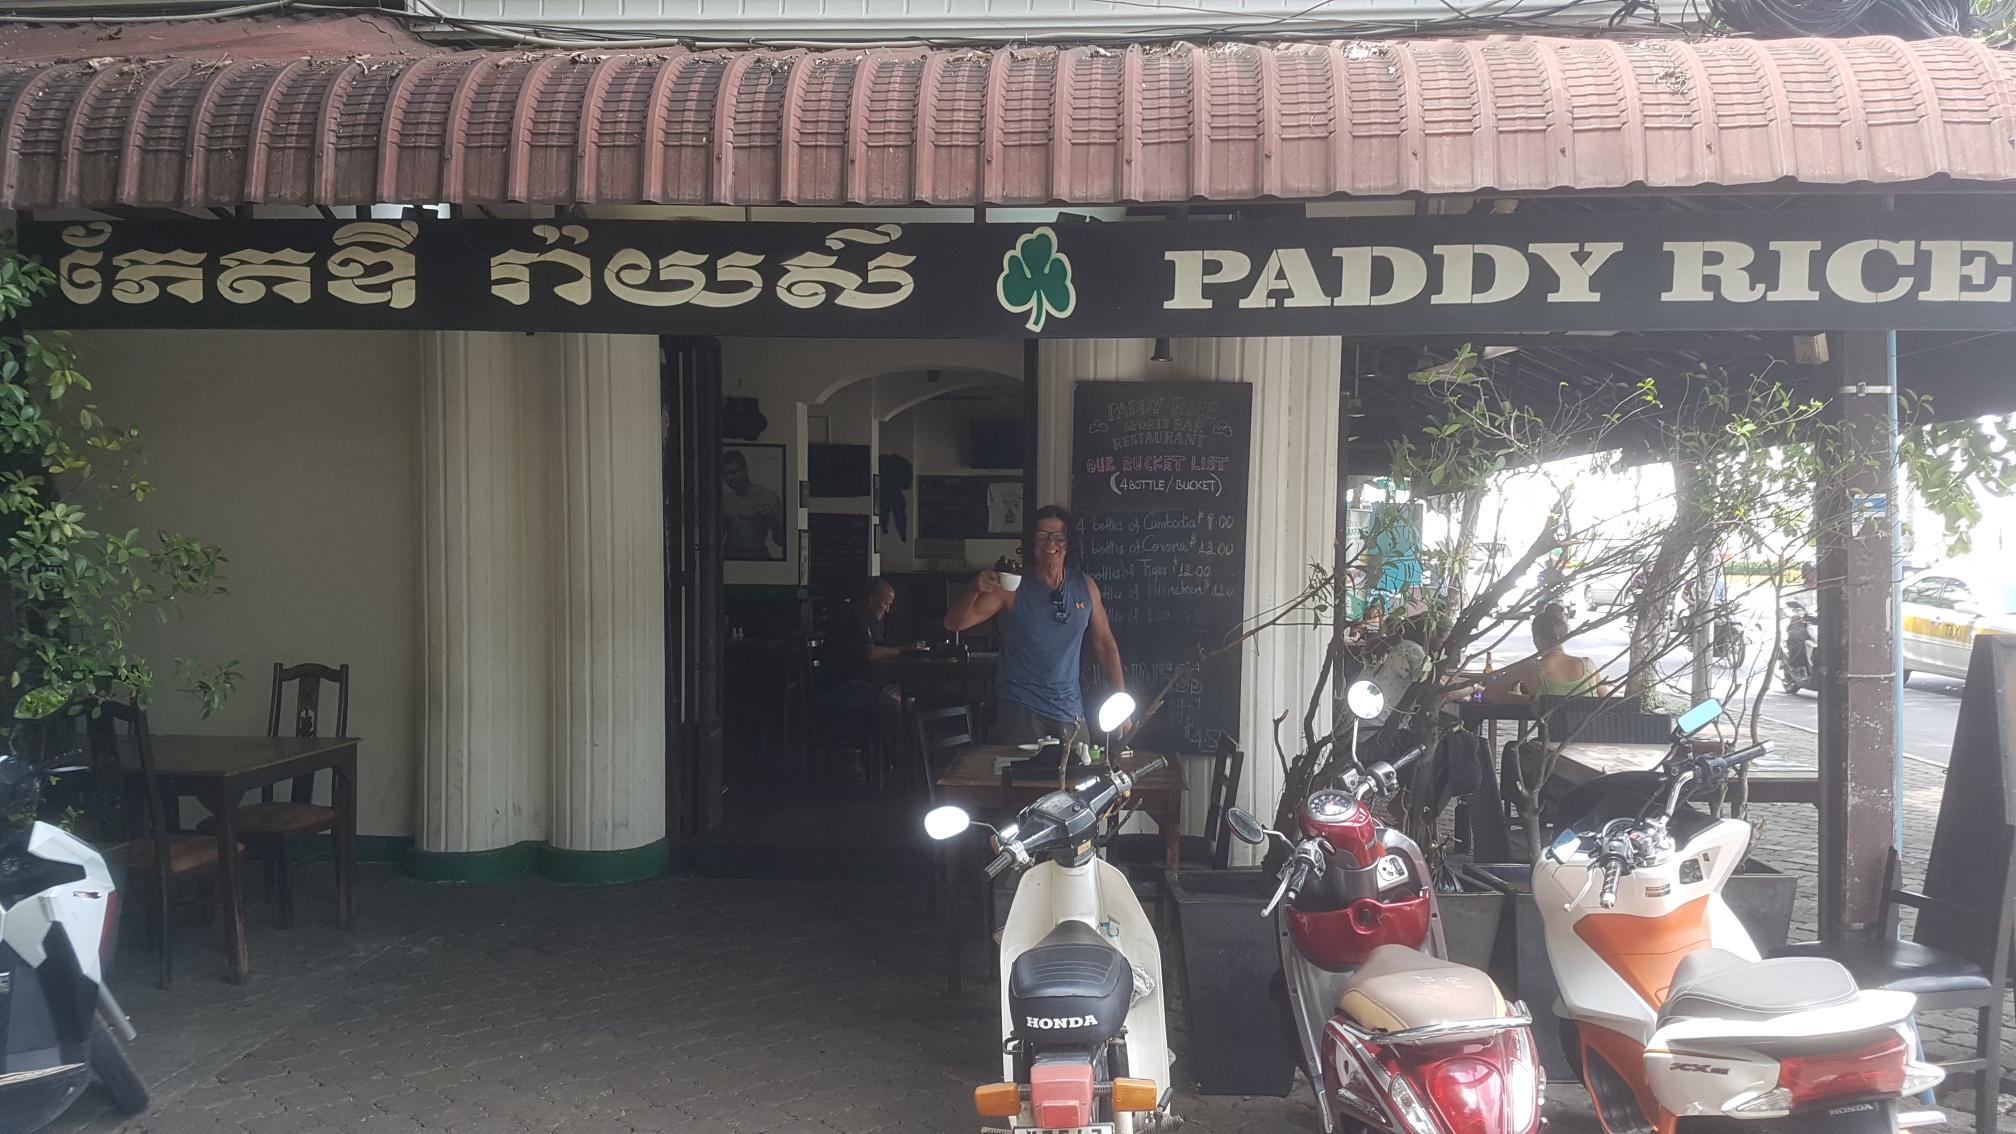 Paddy Rice Sports Bar